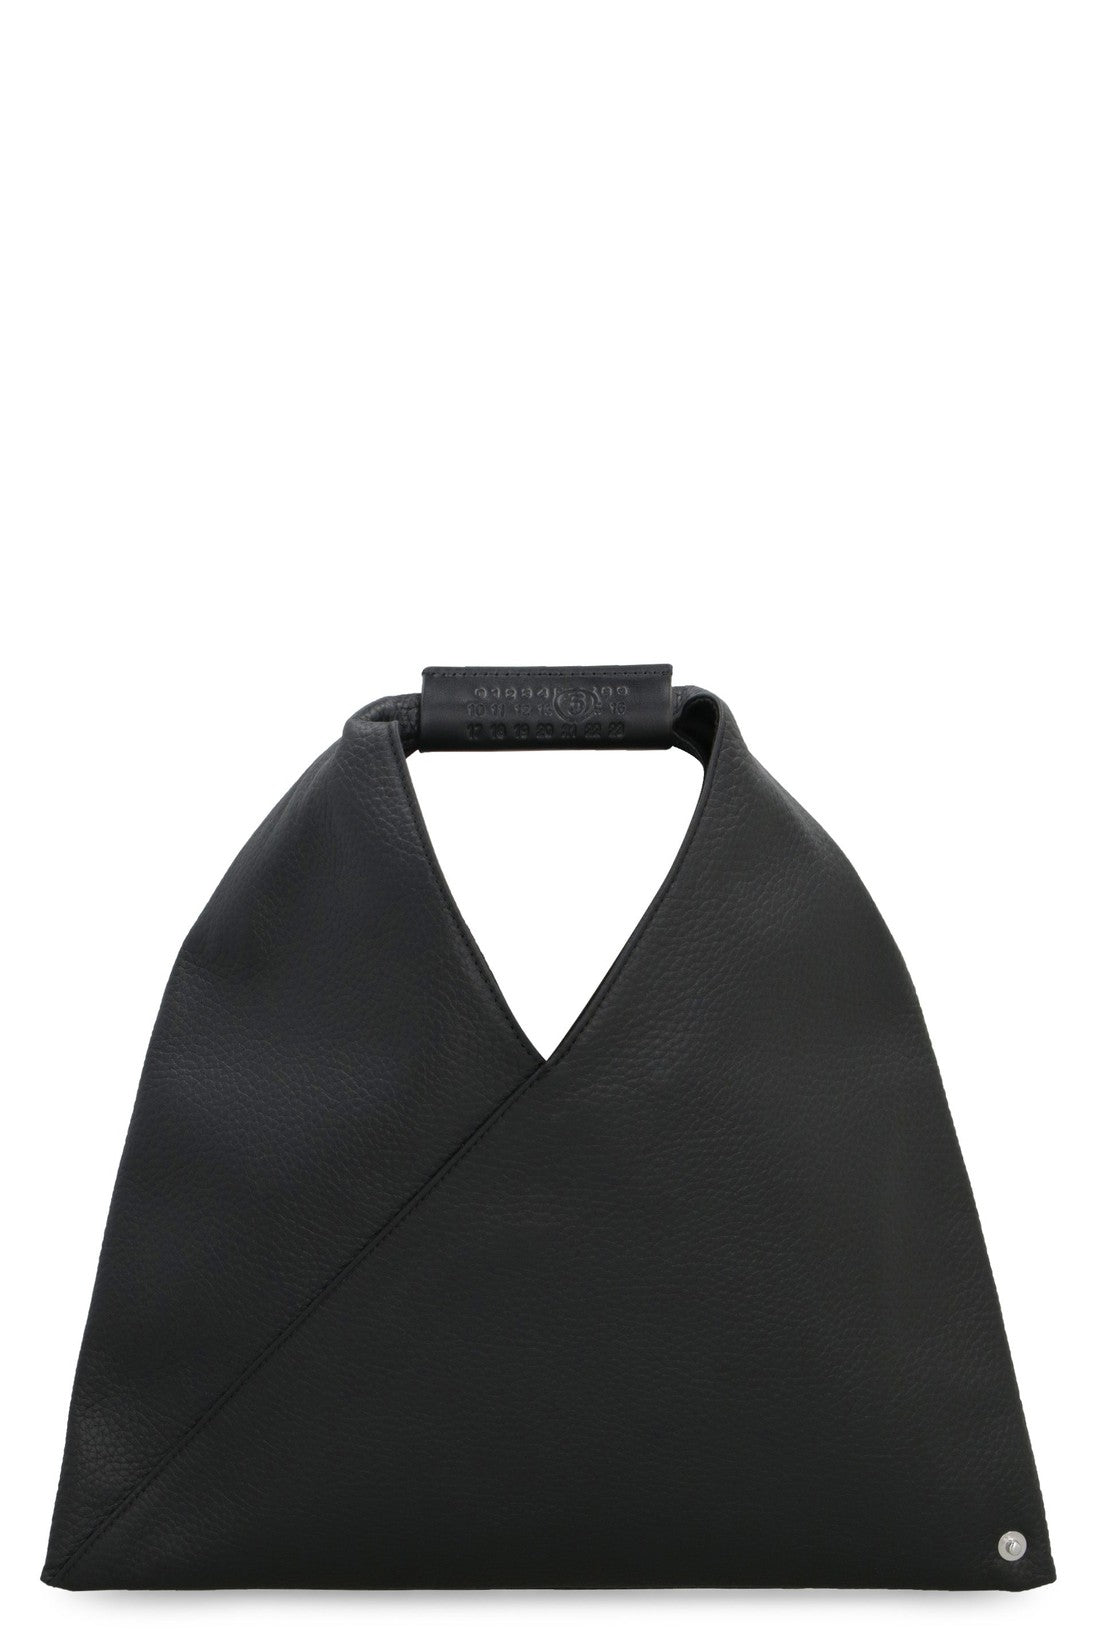 MM6 Maison Margiela-OUTLET-SALE-Japanese leather mini handbag-ARCHIVIST